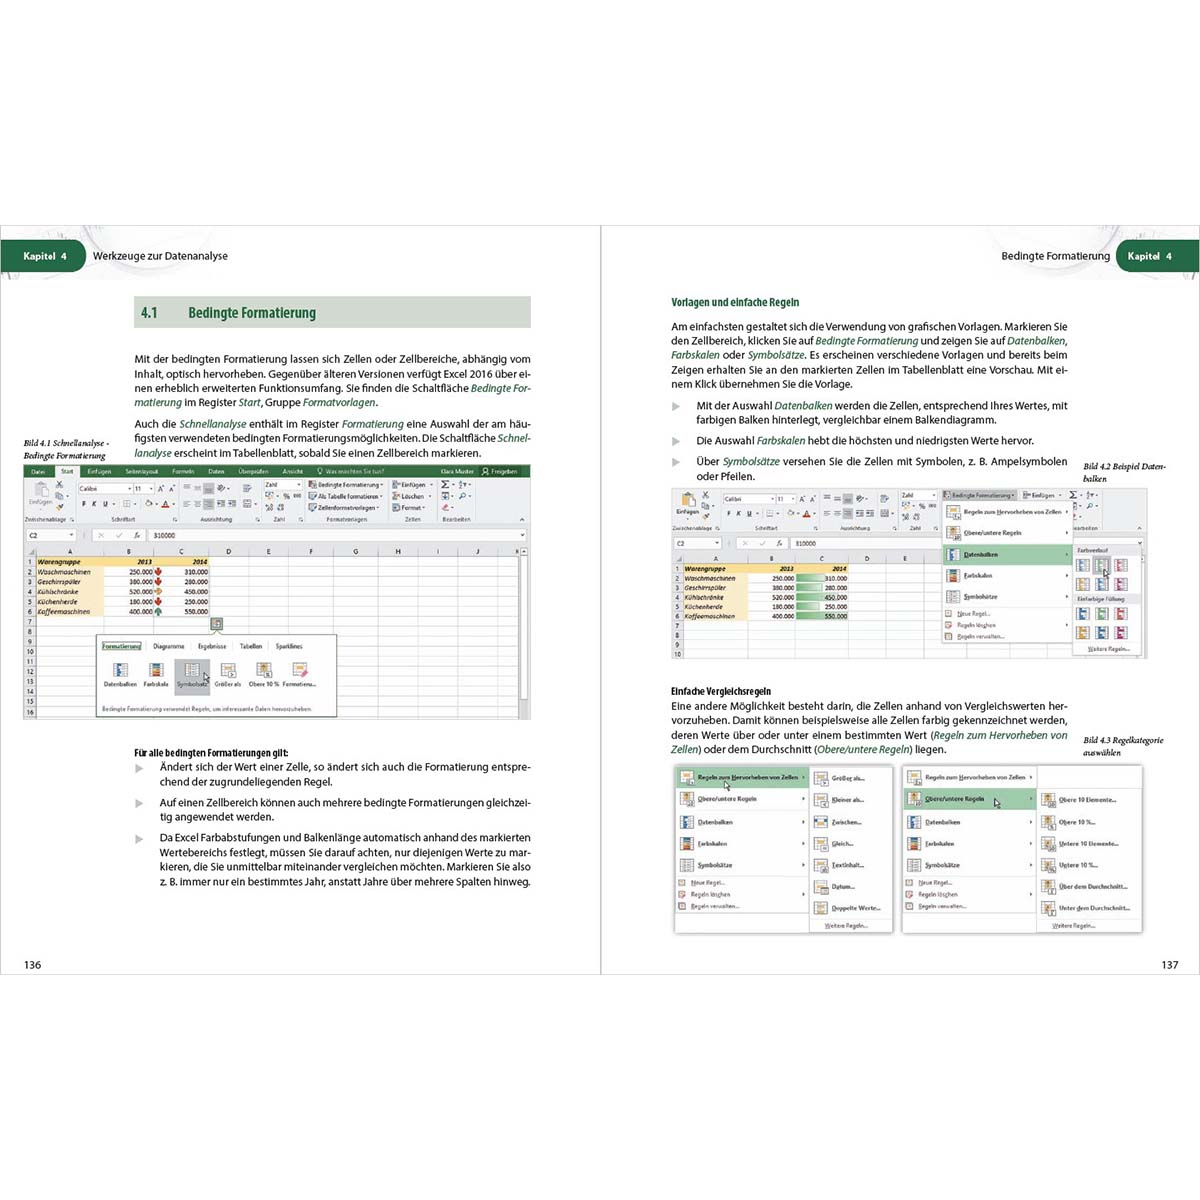 Excel 2016 Aufbauwissen - für Excel-Anwender Profiwissen